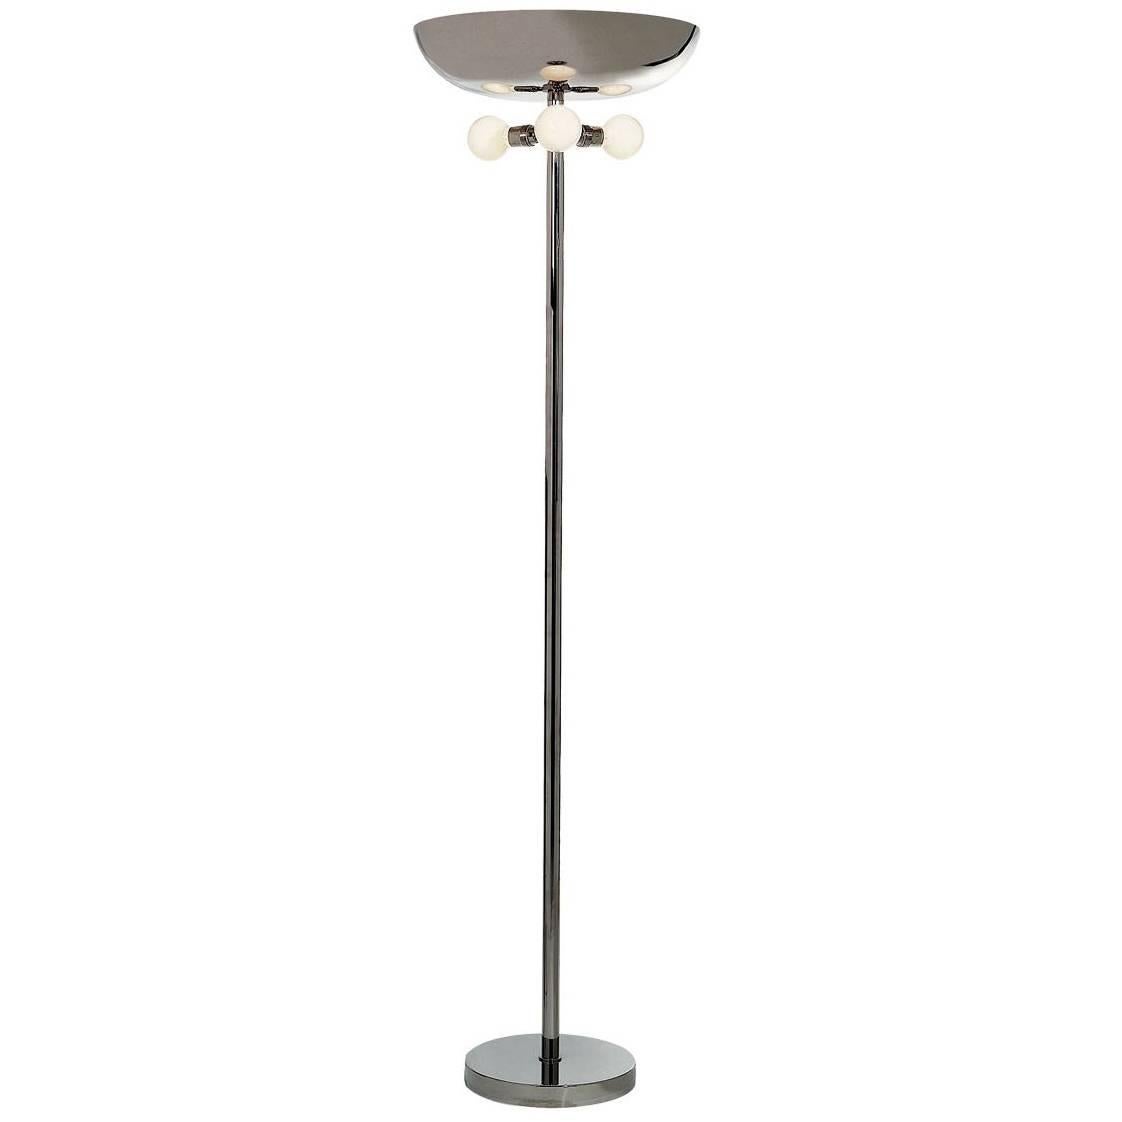 Deutsches Bauhaus Art Deco Style Brass Floor Lamp Torch, Re-Edition